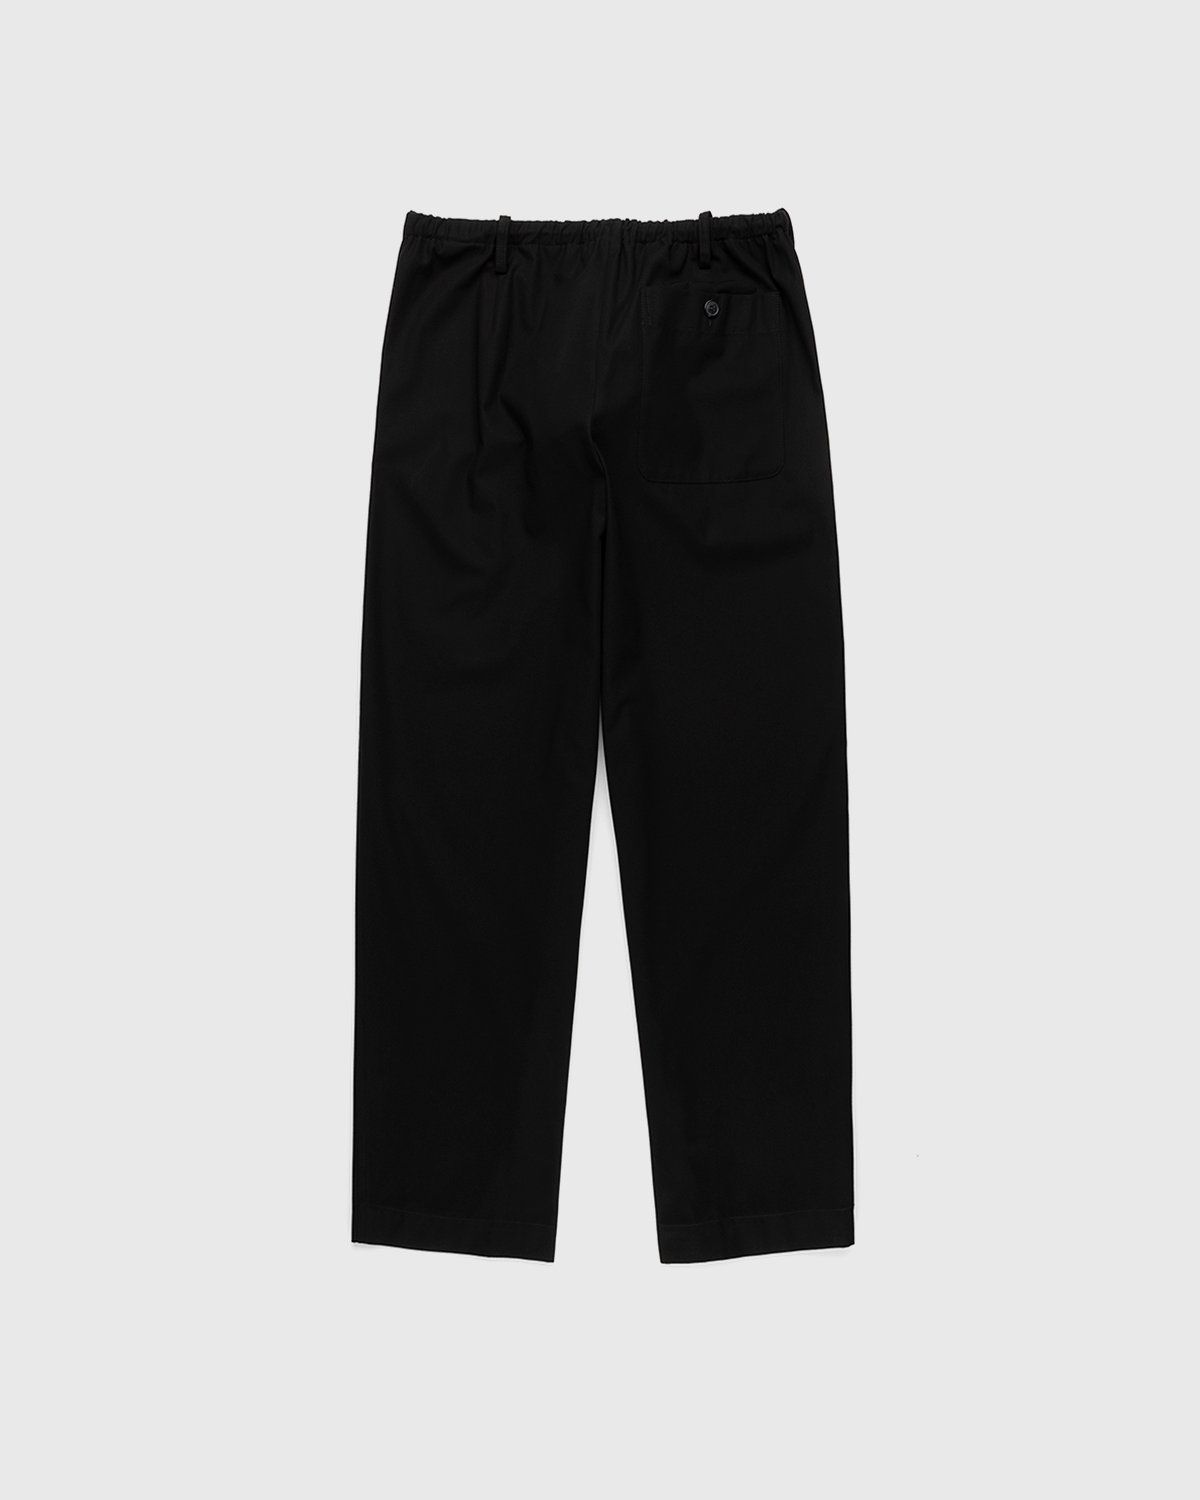 Dries van Noten – Penny Pants Black - Trousers - Black - Image 2